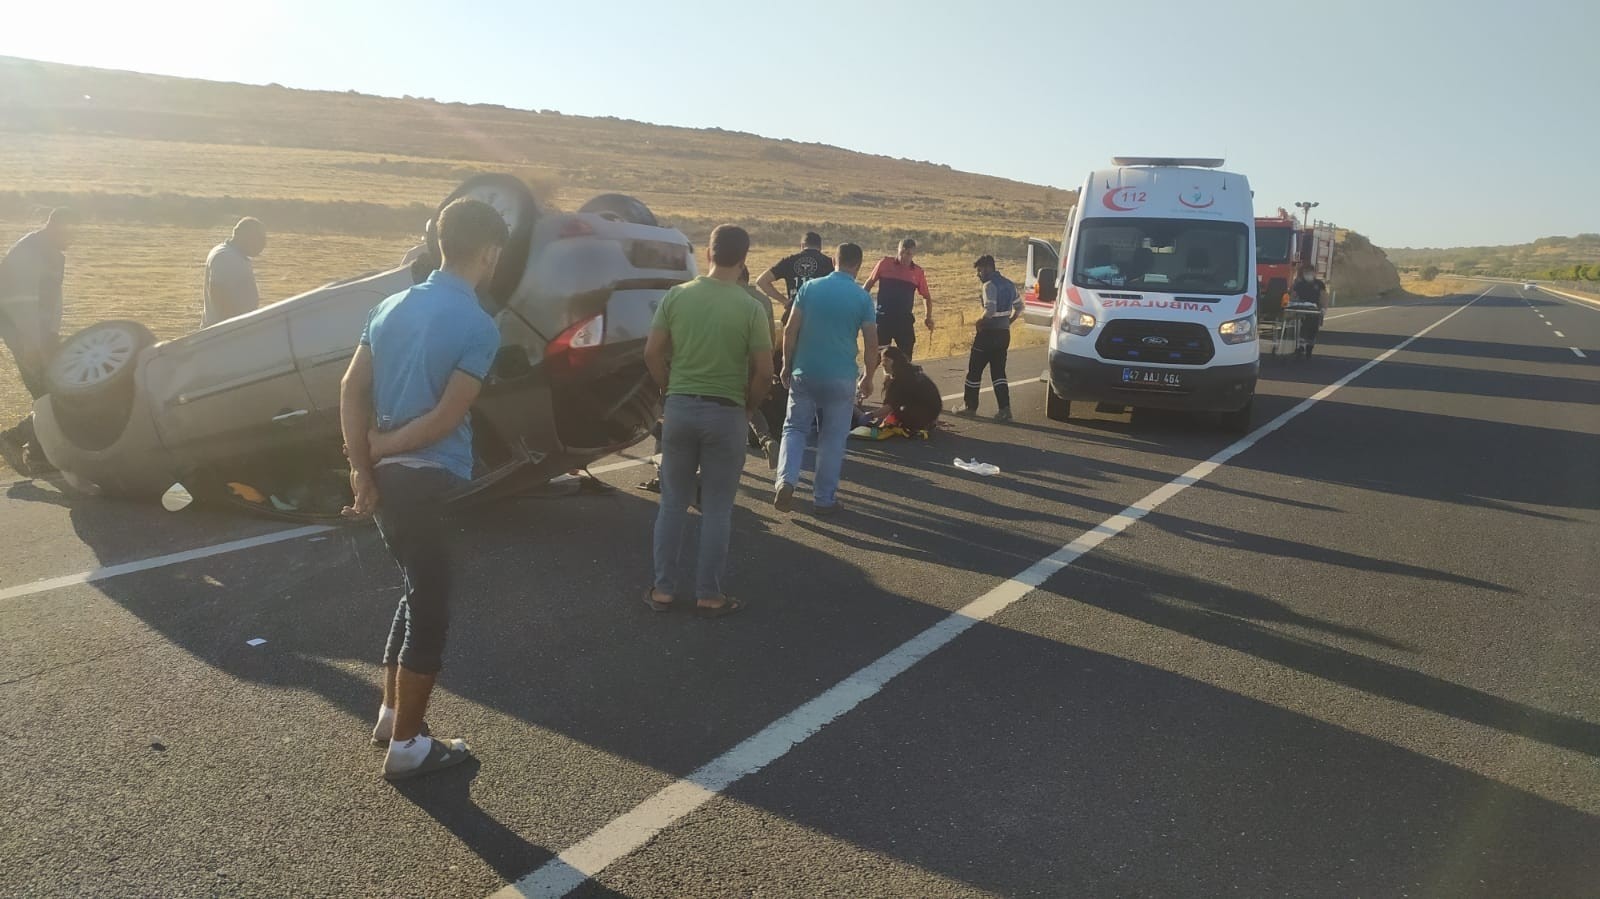 Mardin’de trafik kazası: 2 yaralı